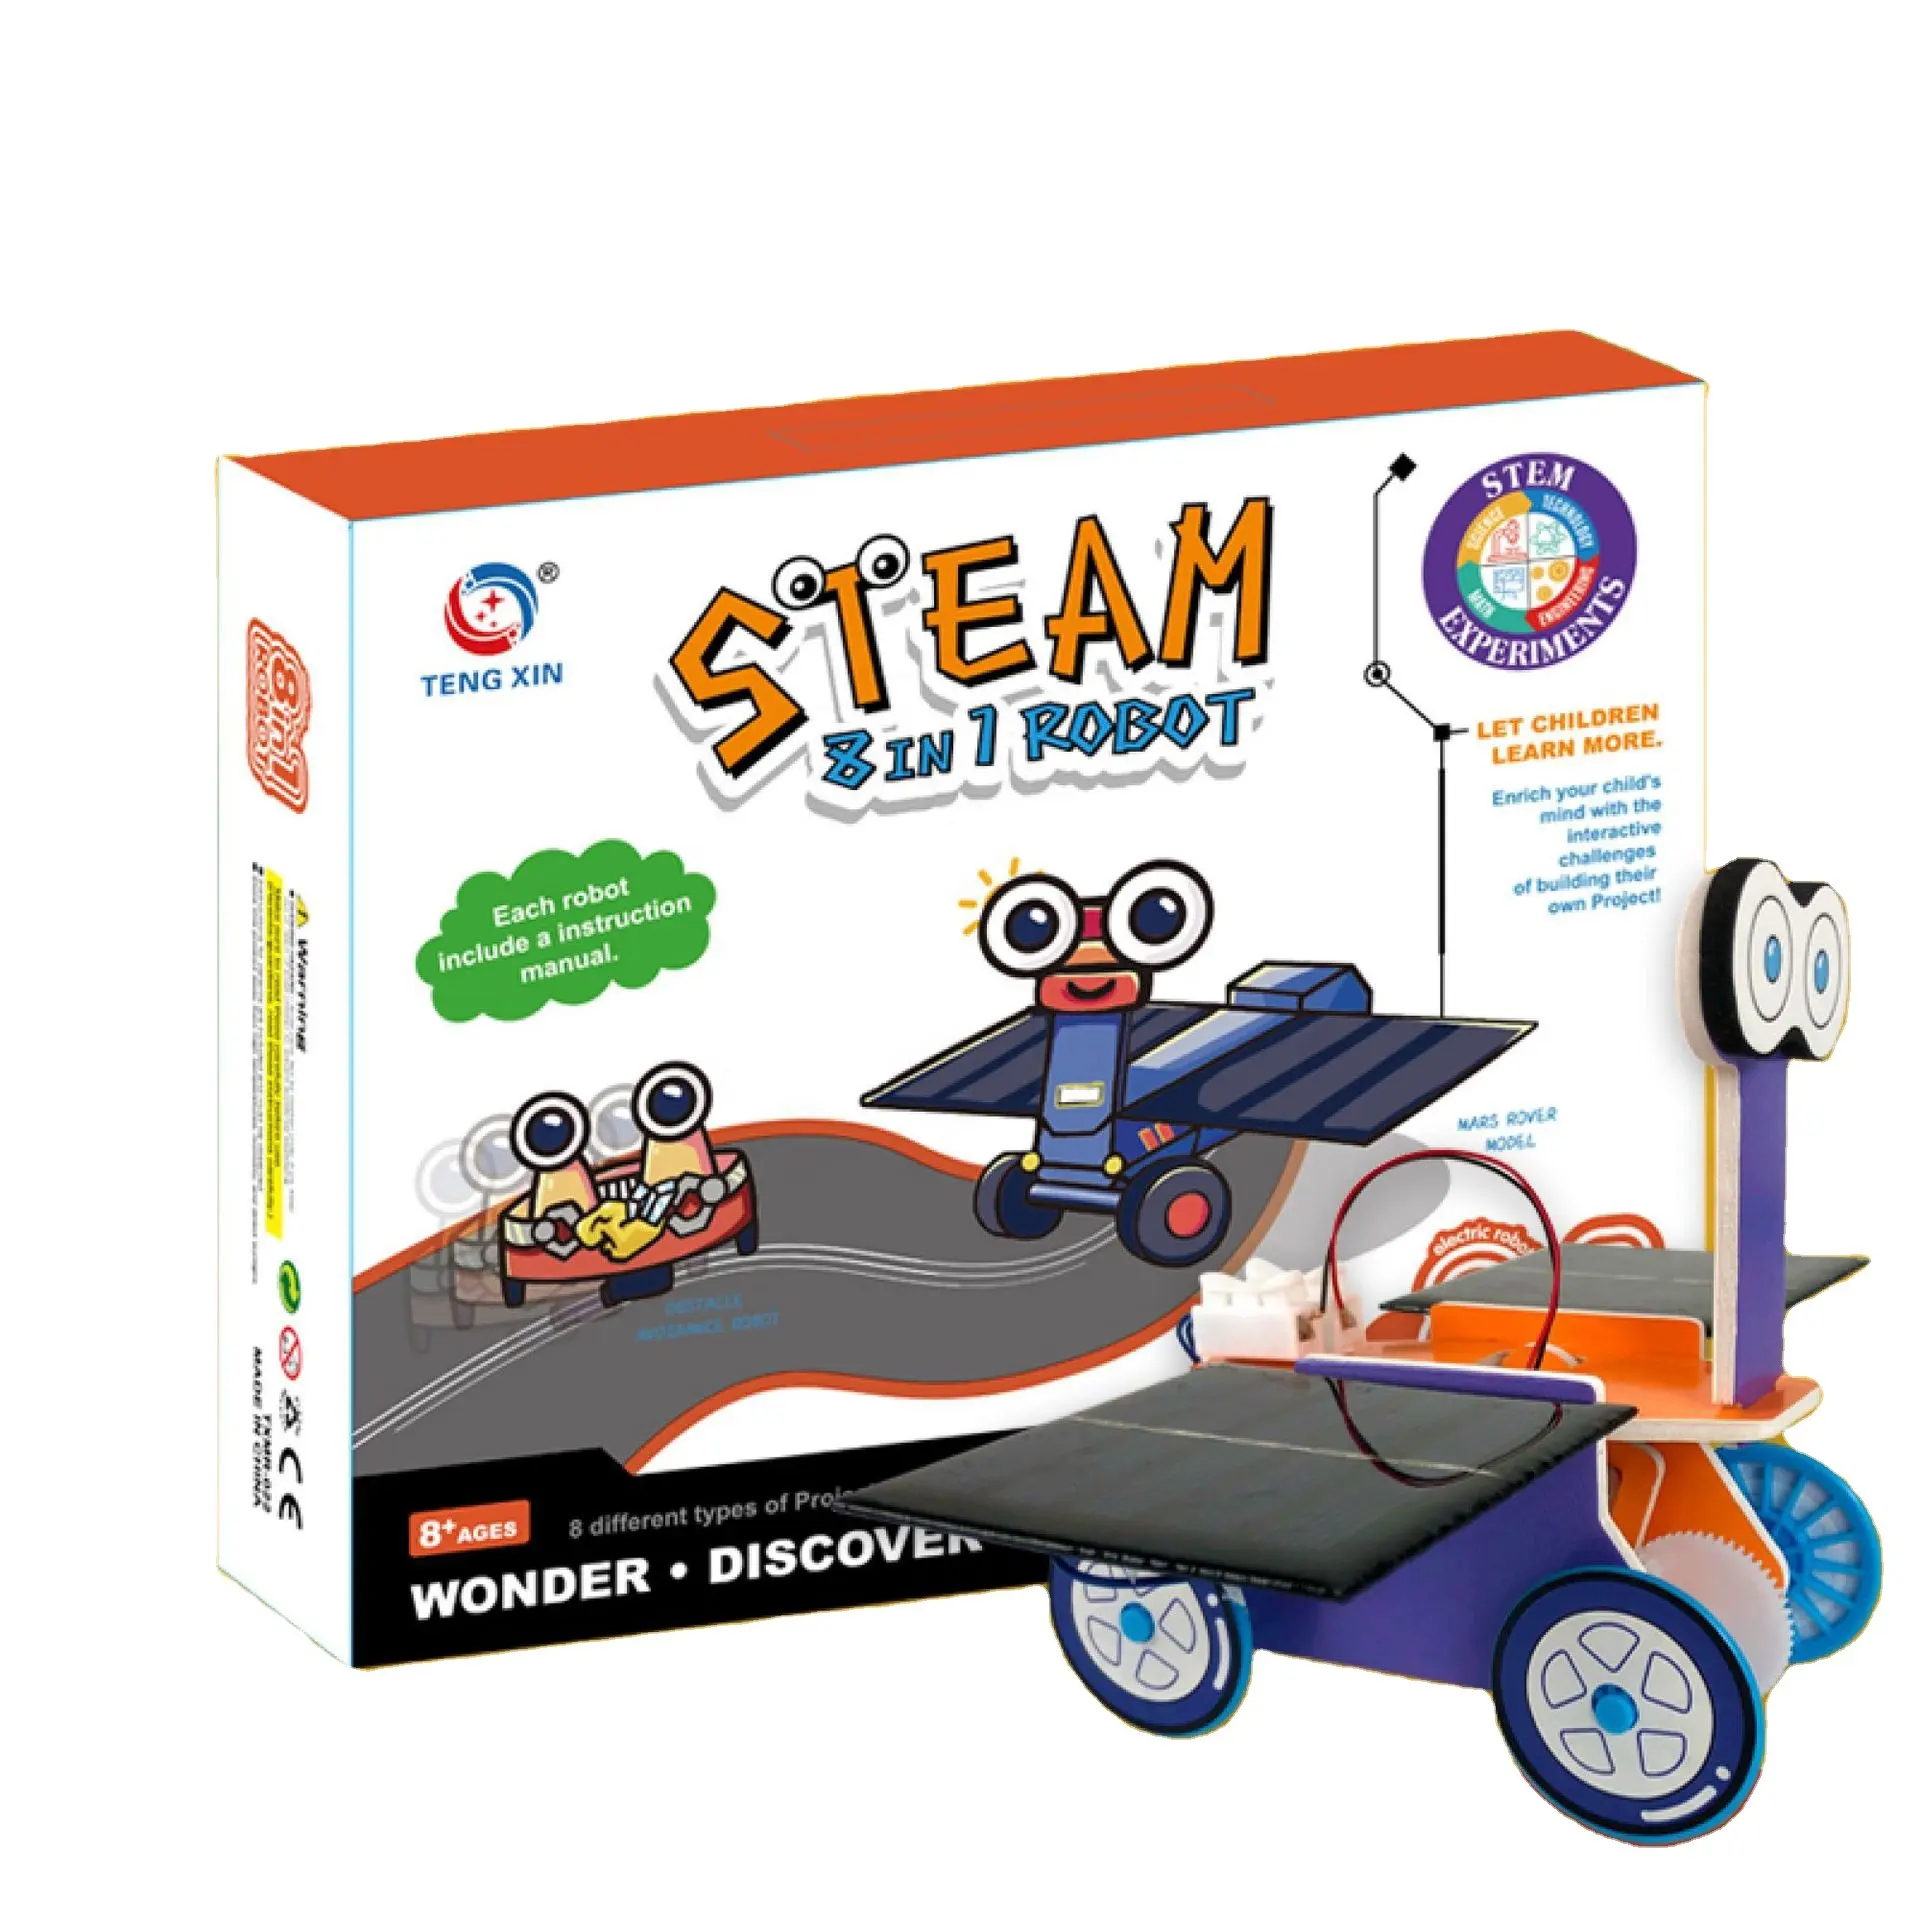 Lern-Diy Wissenschaftsexperiment-Kits 8-In-1 Roboter-Wissenschaft-Engineering-Kit Schule Familie kreative Aktivitäten für Kind